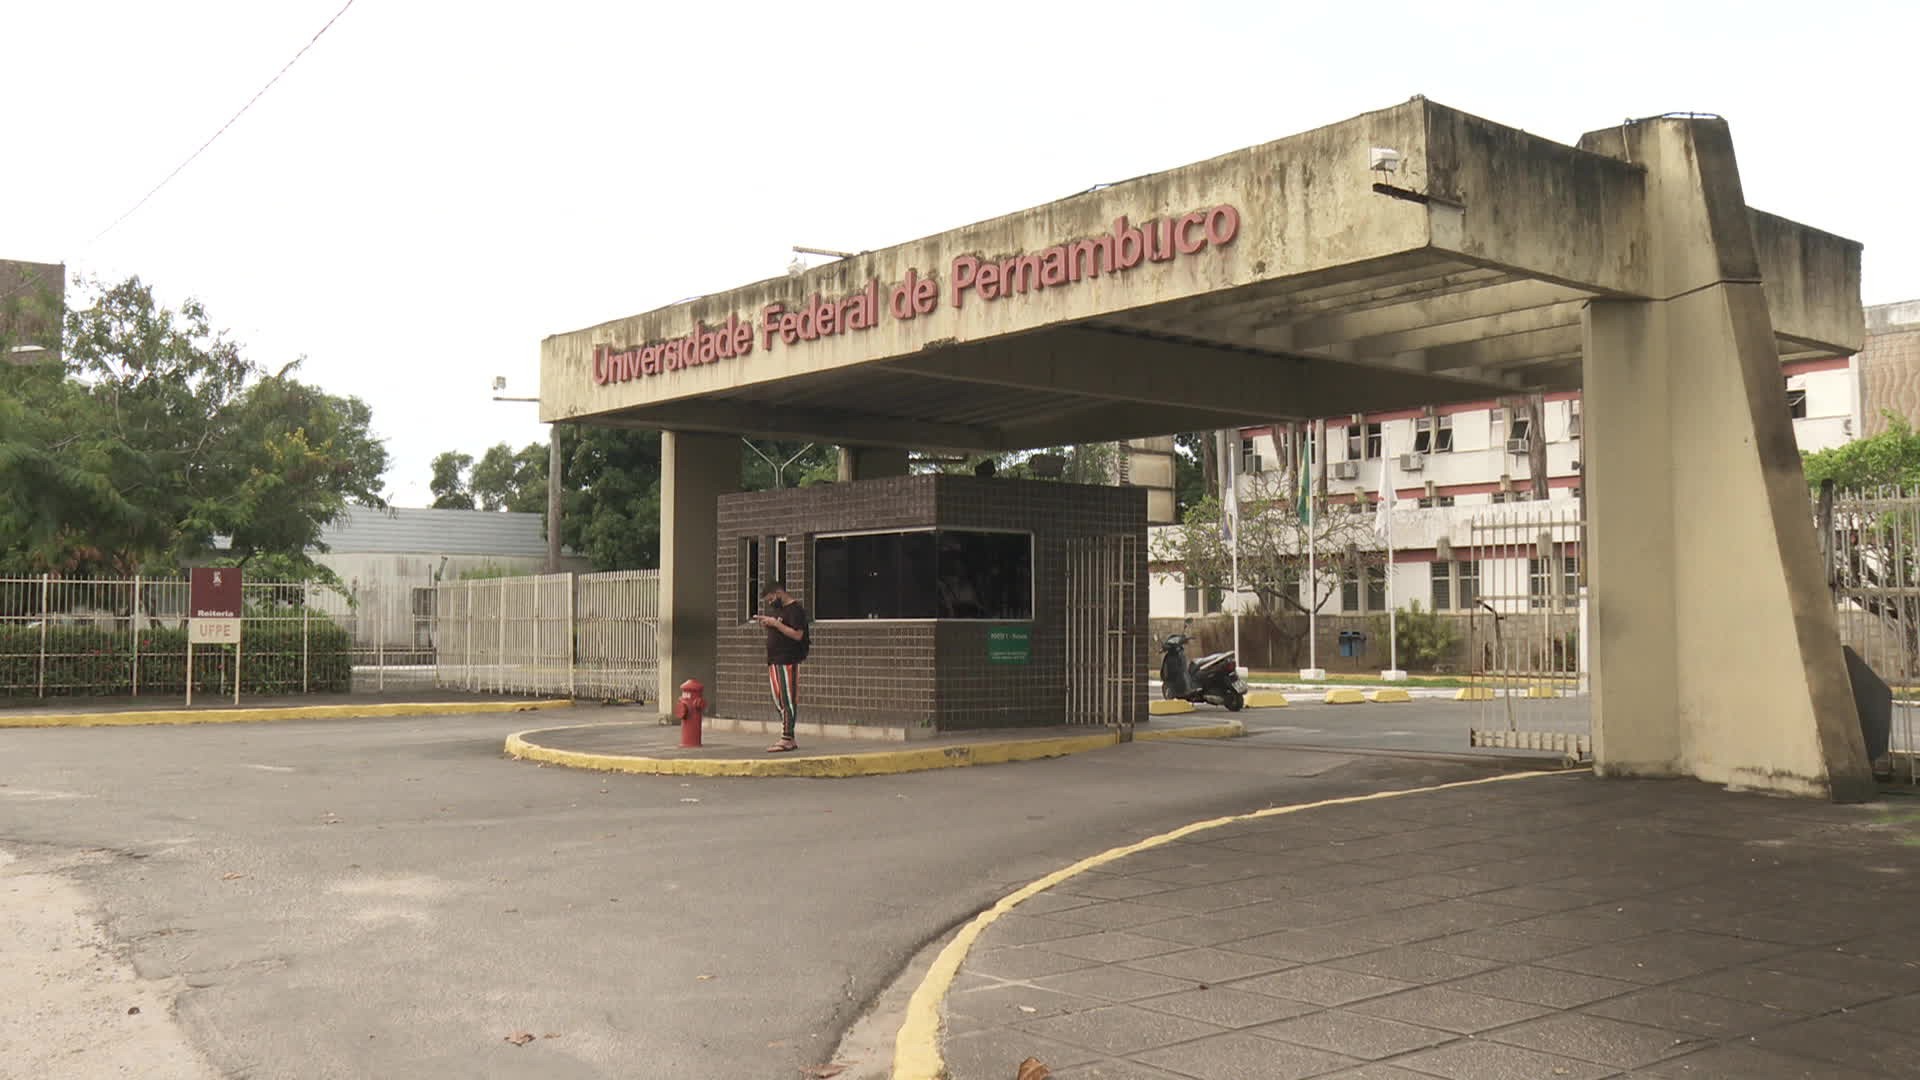 Professores da UFPE entram em greve; confira situação em outras instituições federais de Pernambuco